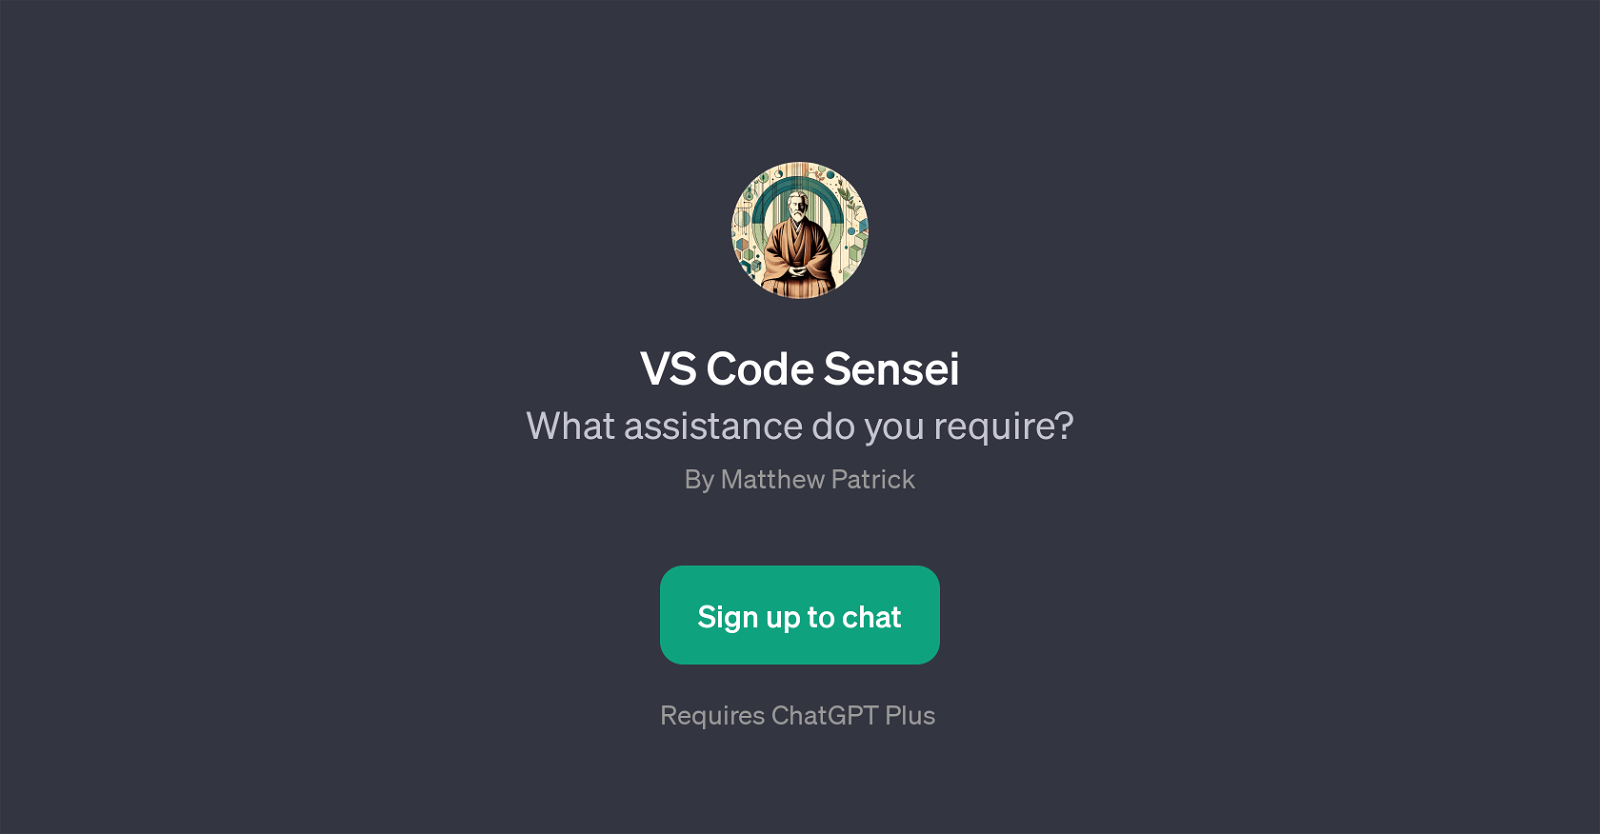 VS Code Sensei website